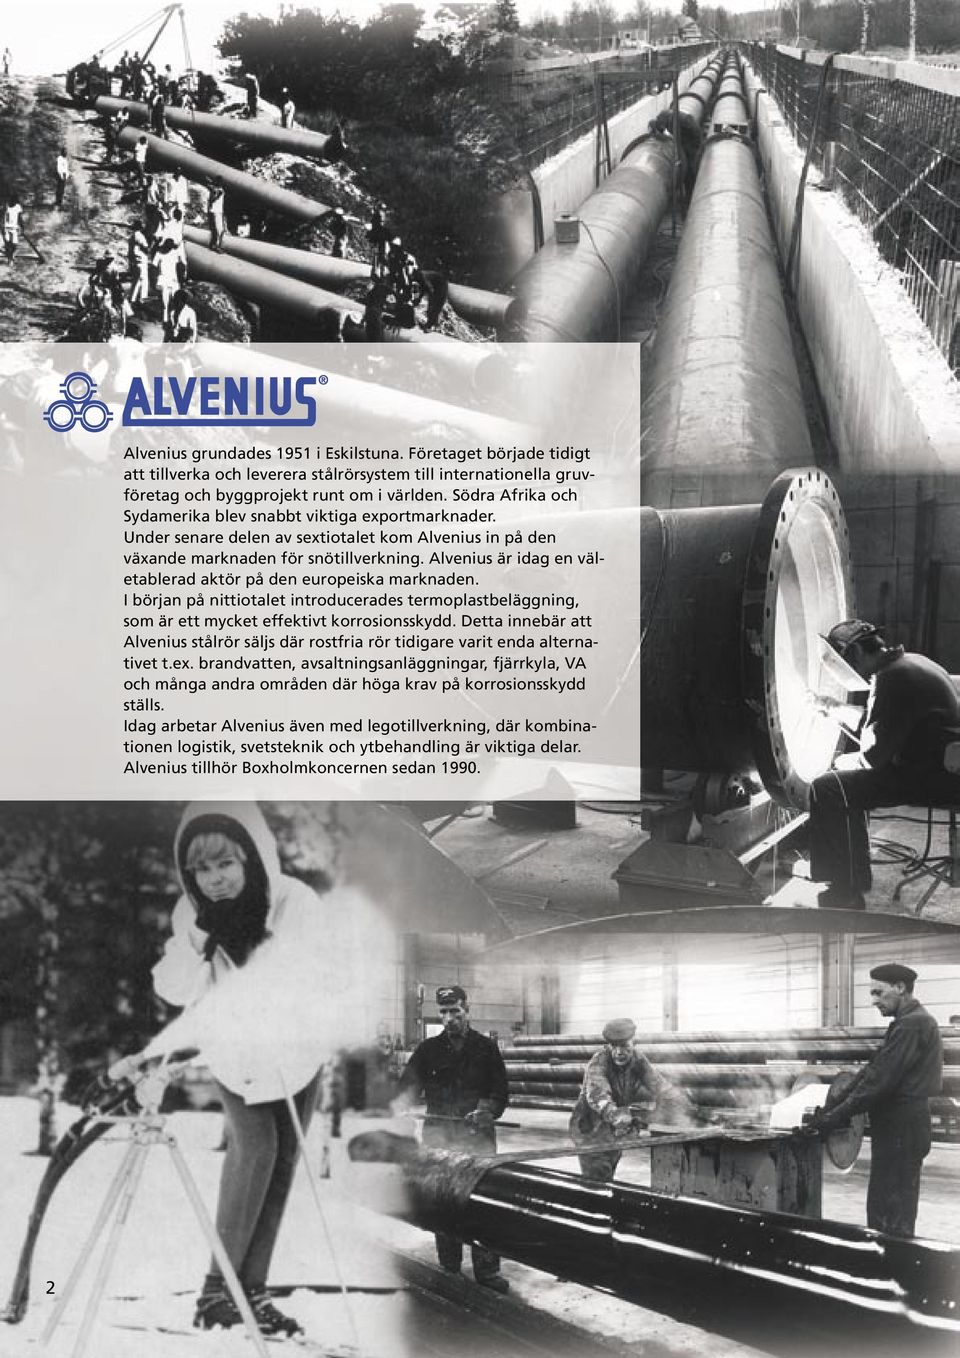 Alvenius är idag en väletablerad aktör på den europeiska marknaden. I början på nittiotalet introducerades termoplastbeläggning, som är ett mycket effektivt korrosionsskydd.